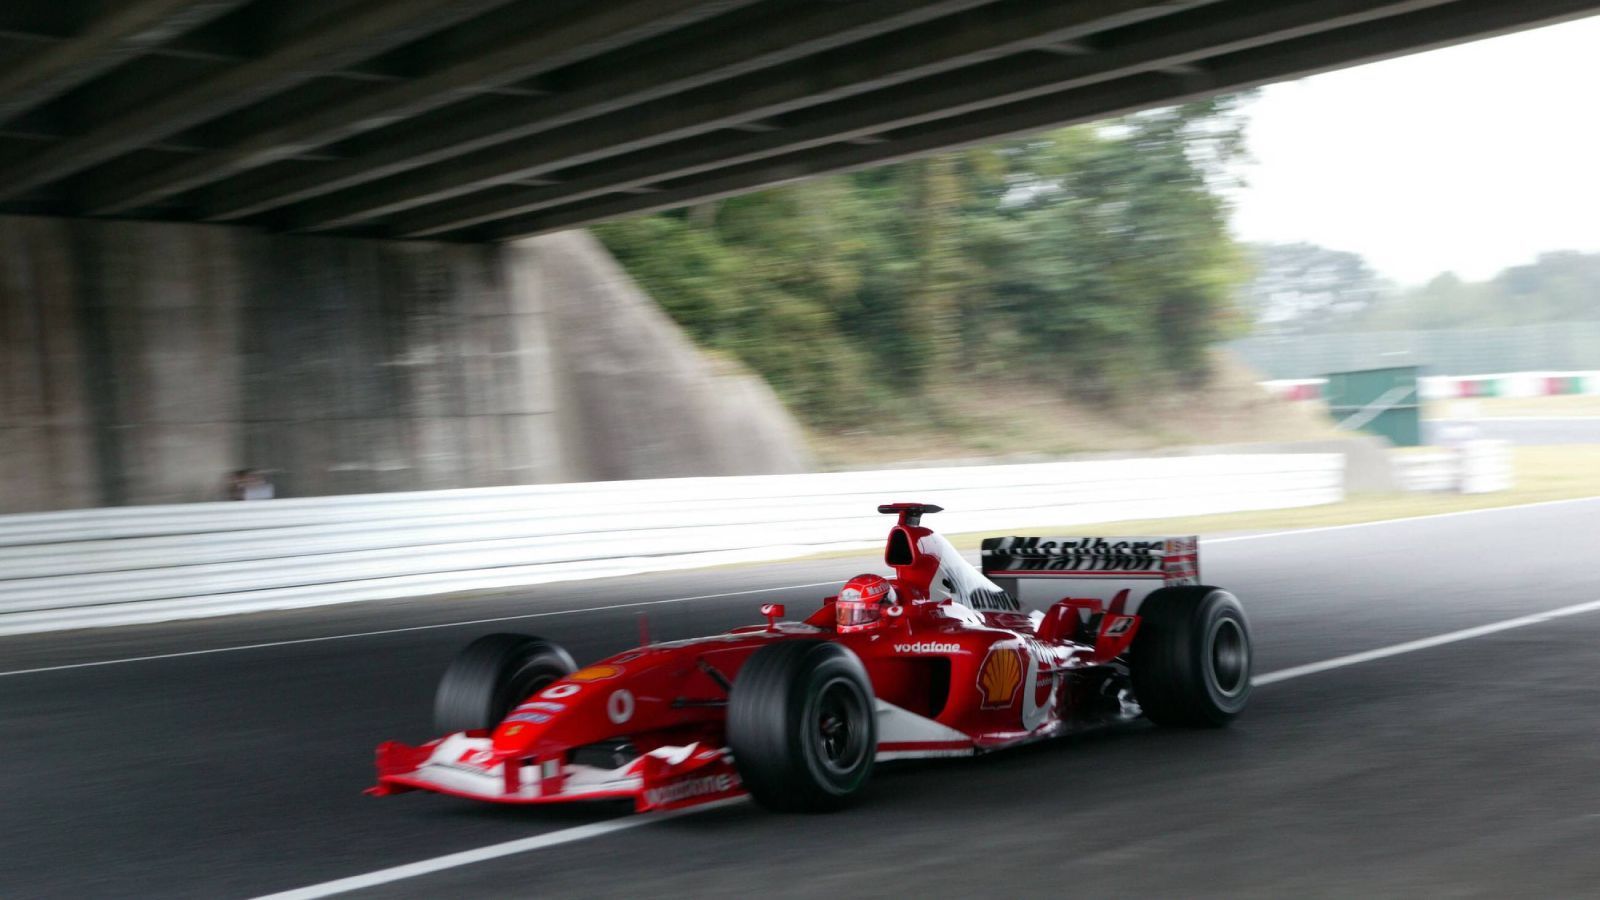 
                <strong>Michael Schumacher wird zum sechsten Mal Weltmeister</strong><br>
                Die Formel 1-Saison 2003 wird im Oktober entschieden. Beim Großen Preis von Japan in Suzuka reicht Michael Schumacher ein achter Platz und damit ein Meisterschaftspunkt um seinen sechsten Fahrer-Titel in der Königsklasse des Motorsports perfekt zu machen.
              